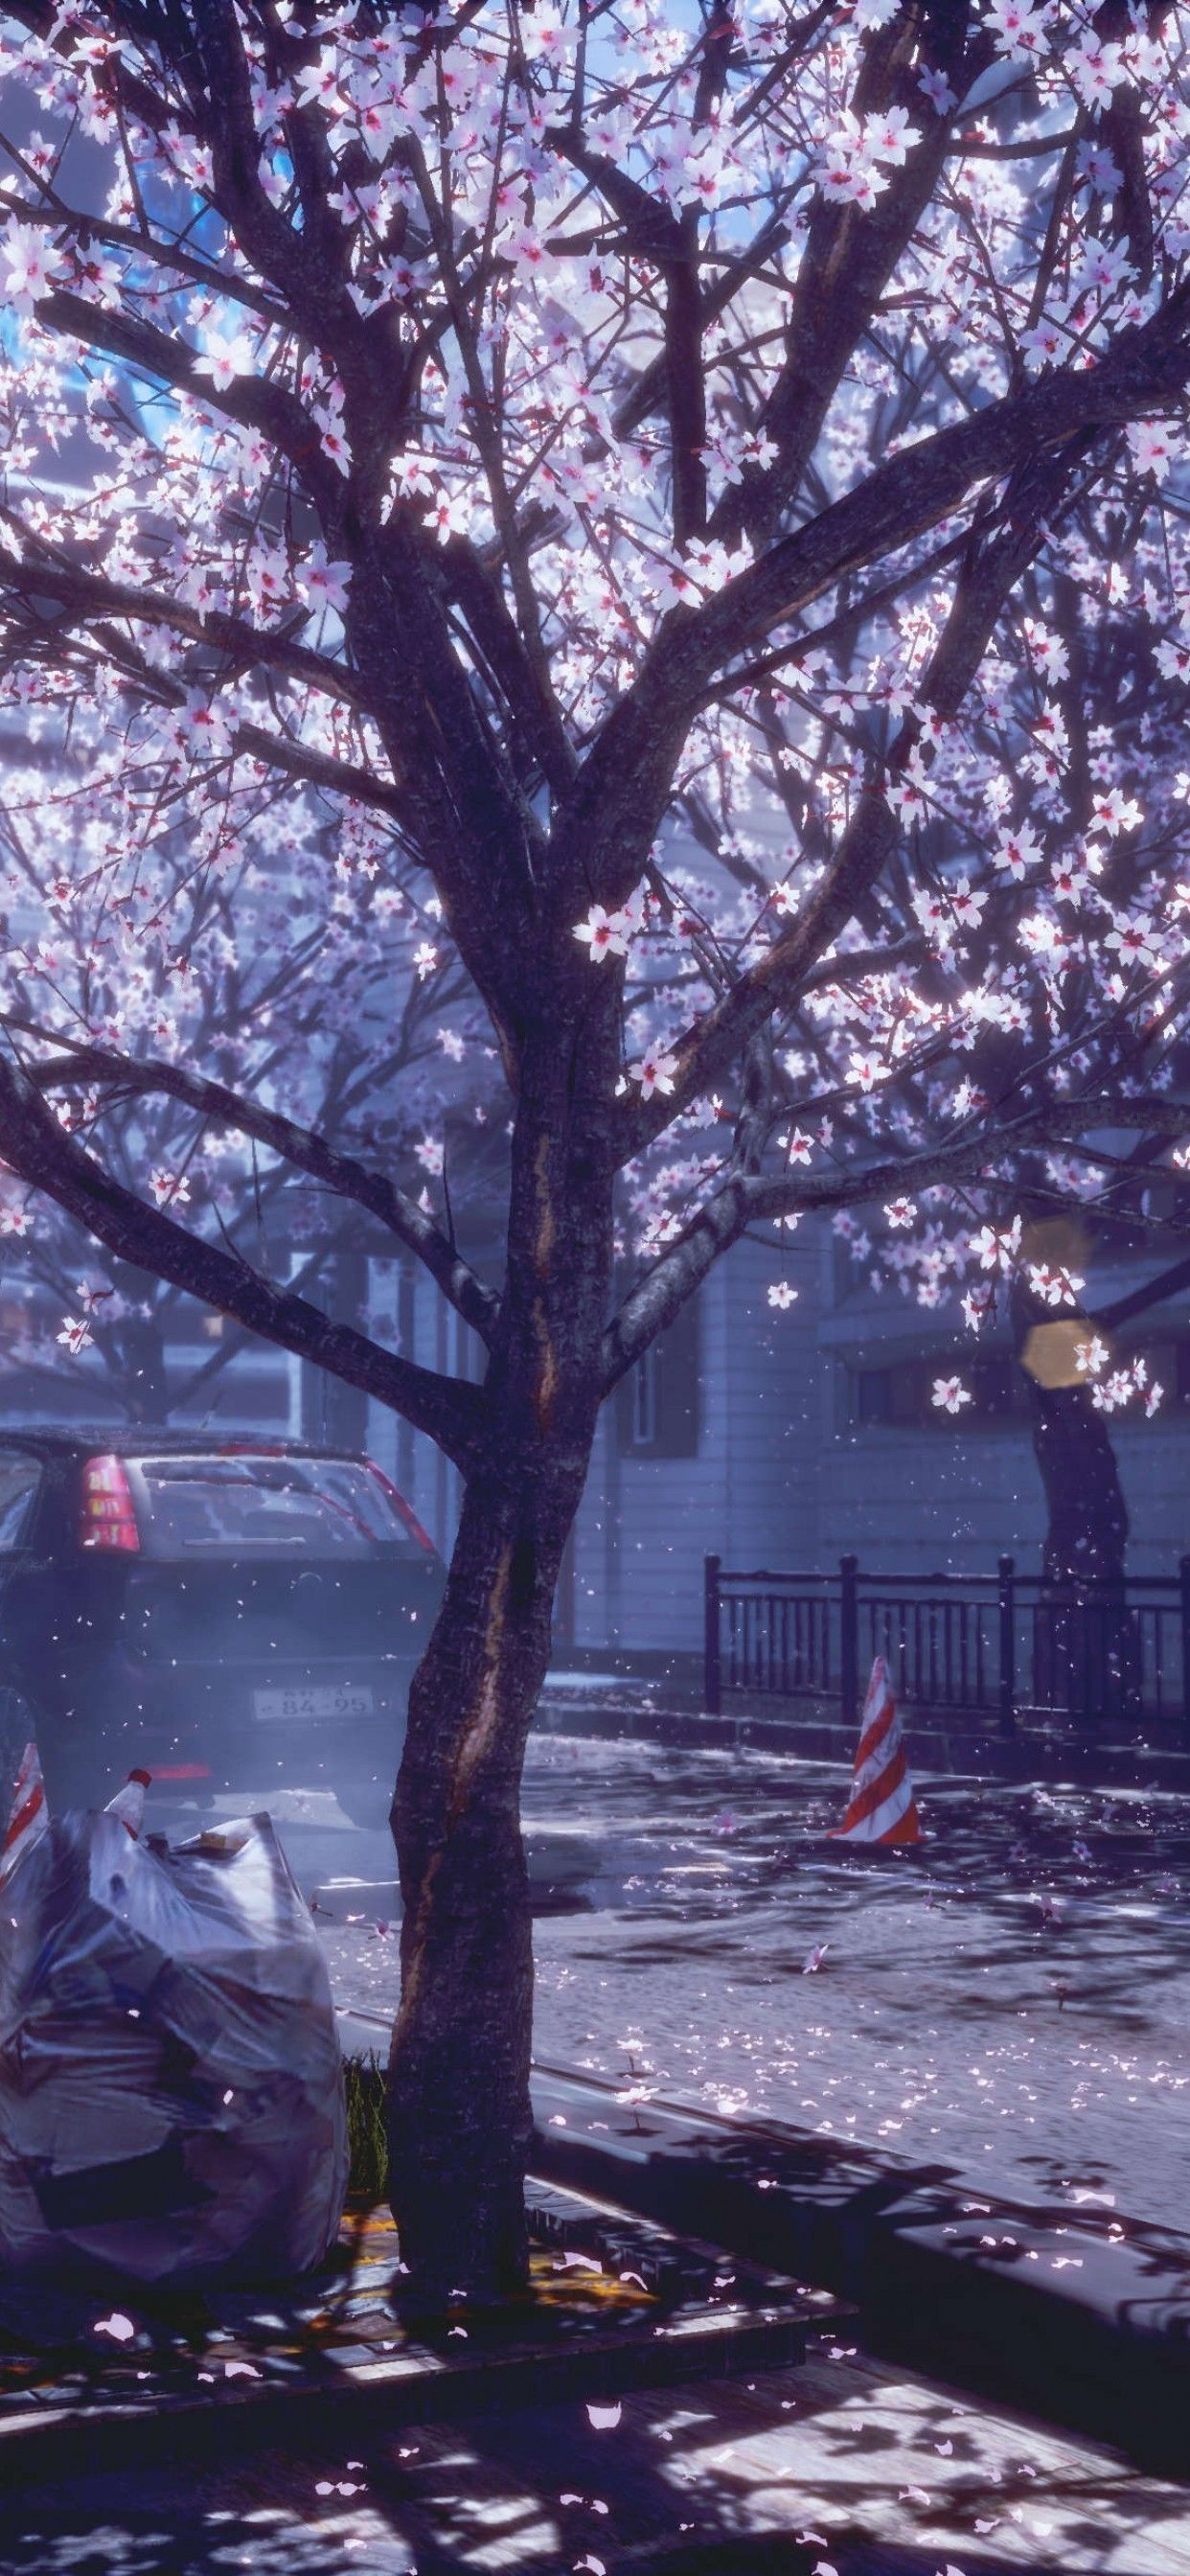 Spring, Cherry Blossom Wallpaper .wallpapermaiden.com